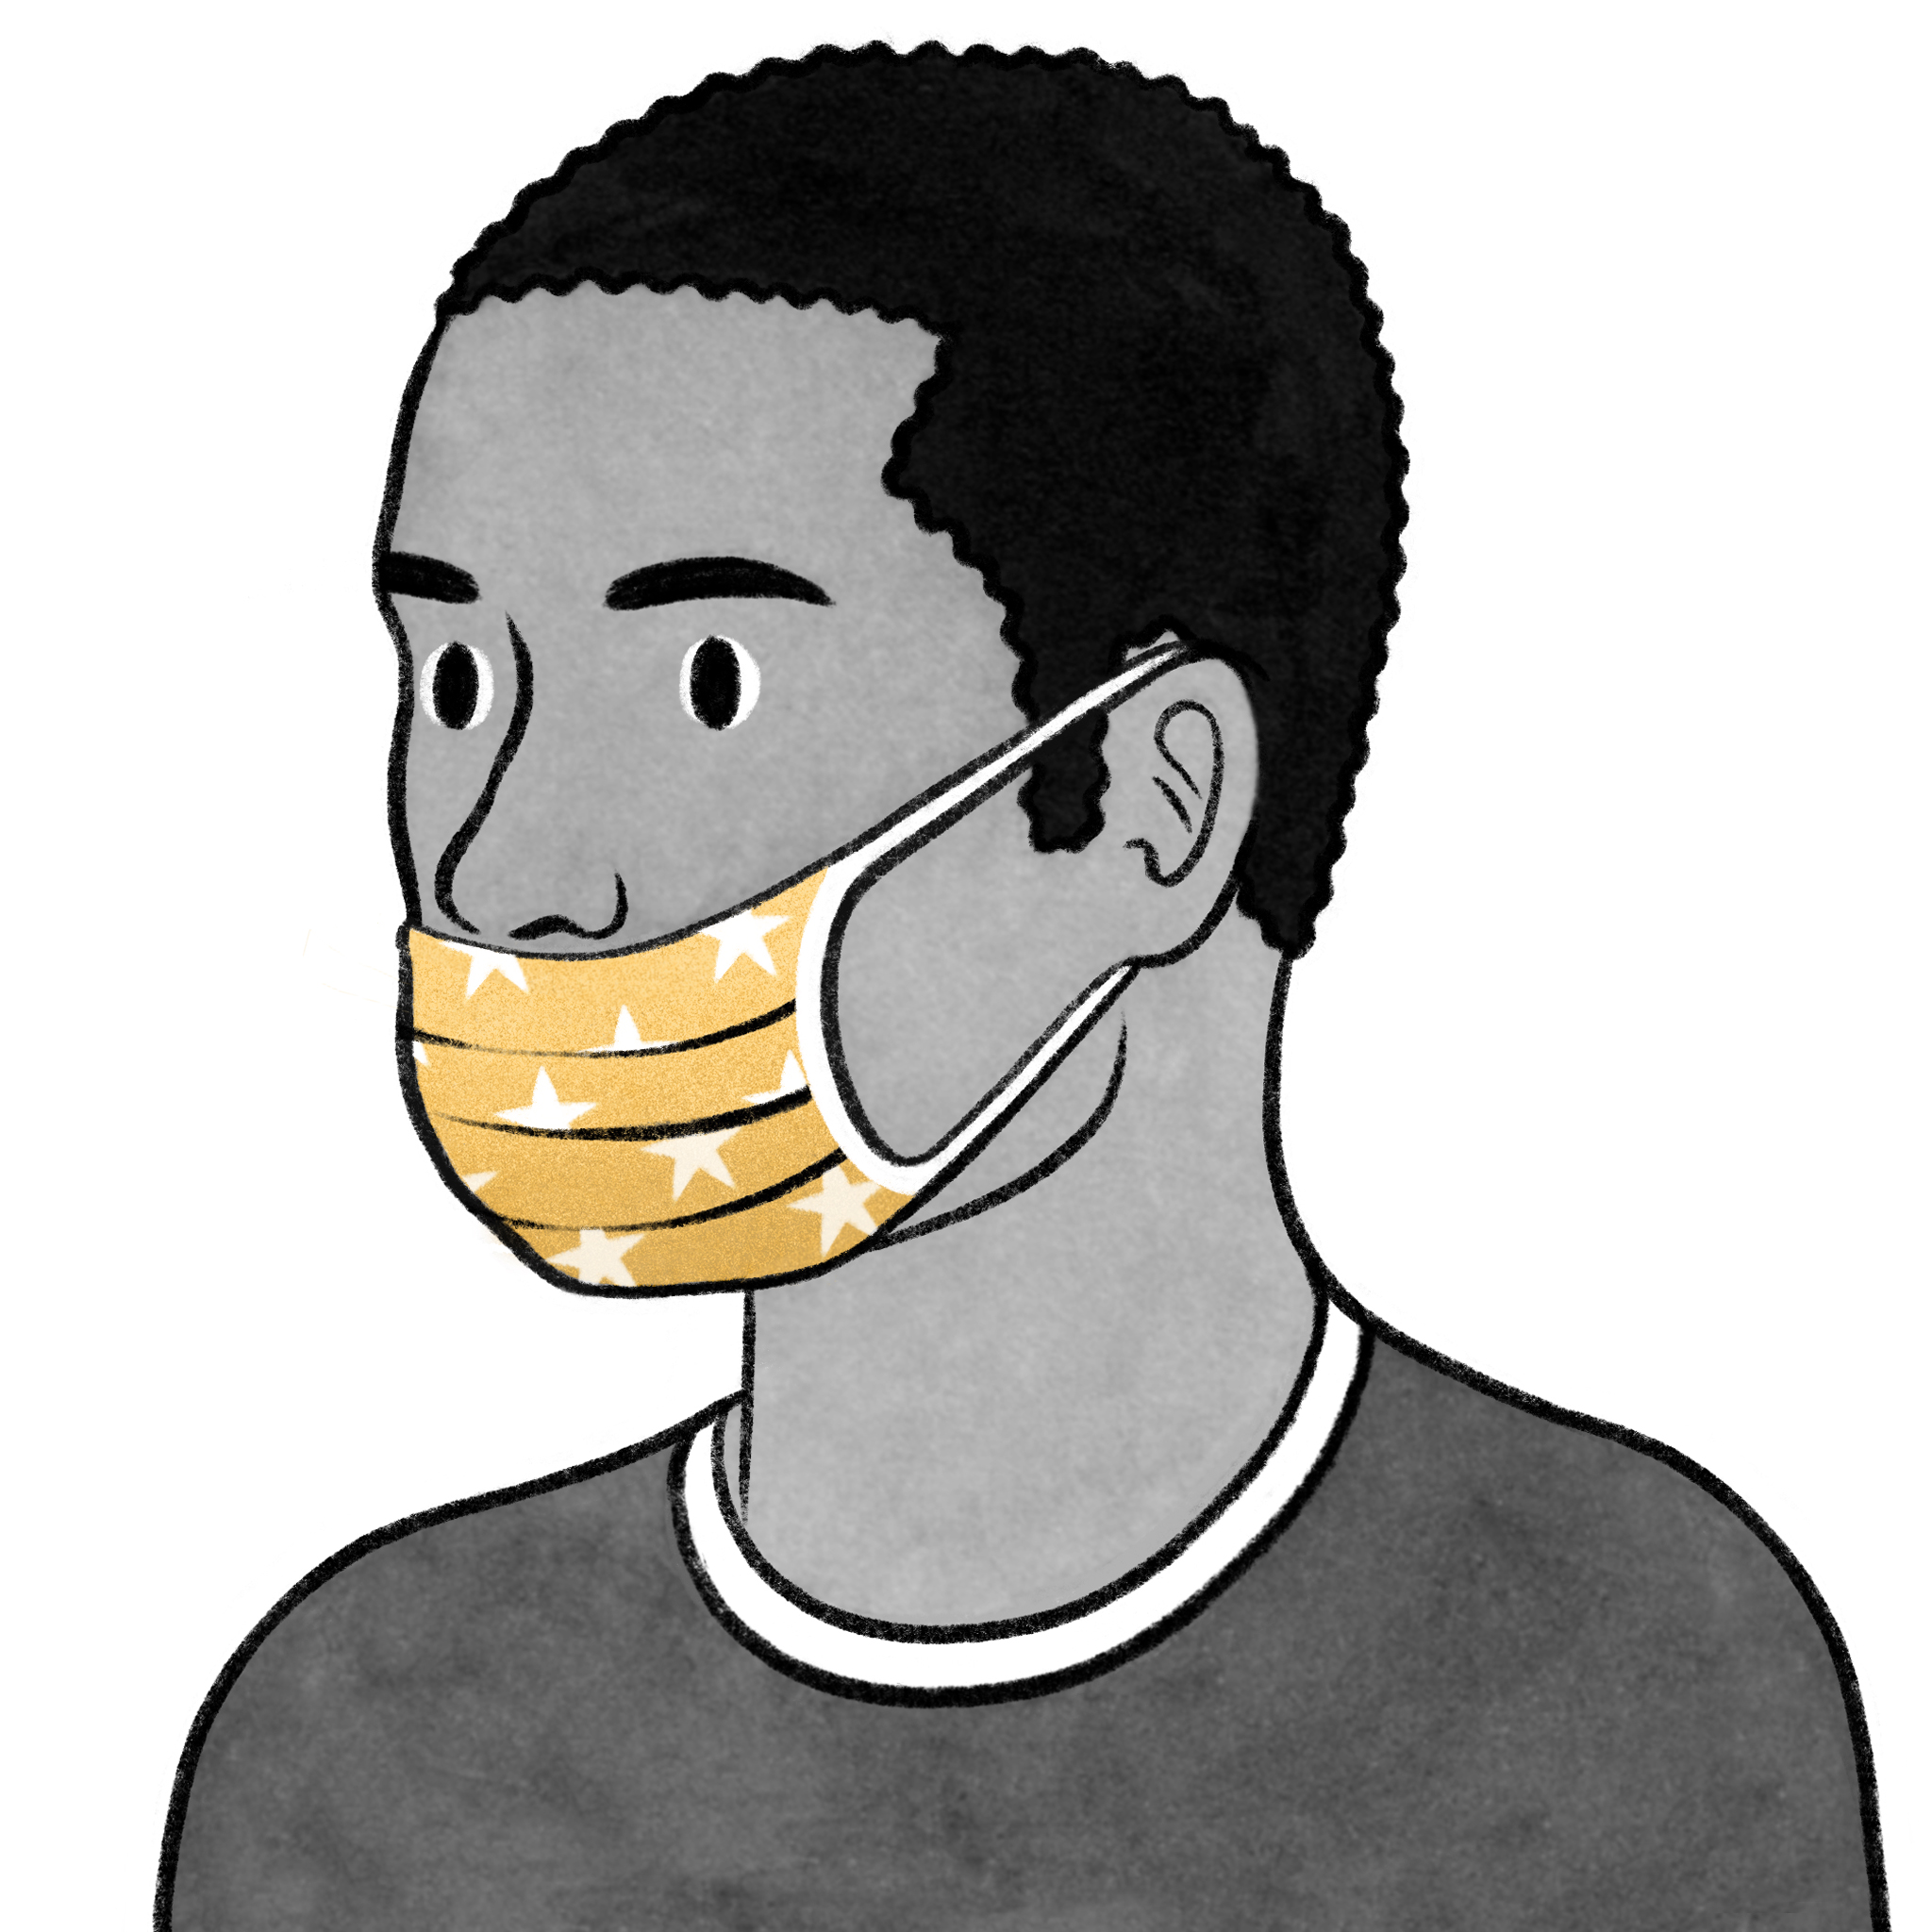  Llevar una máscara facial lleva un tiempo acostumbrarse. (Ilustración: Eleni Kalorkoti / The New York Times)